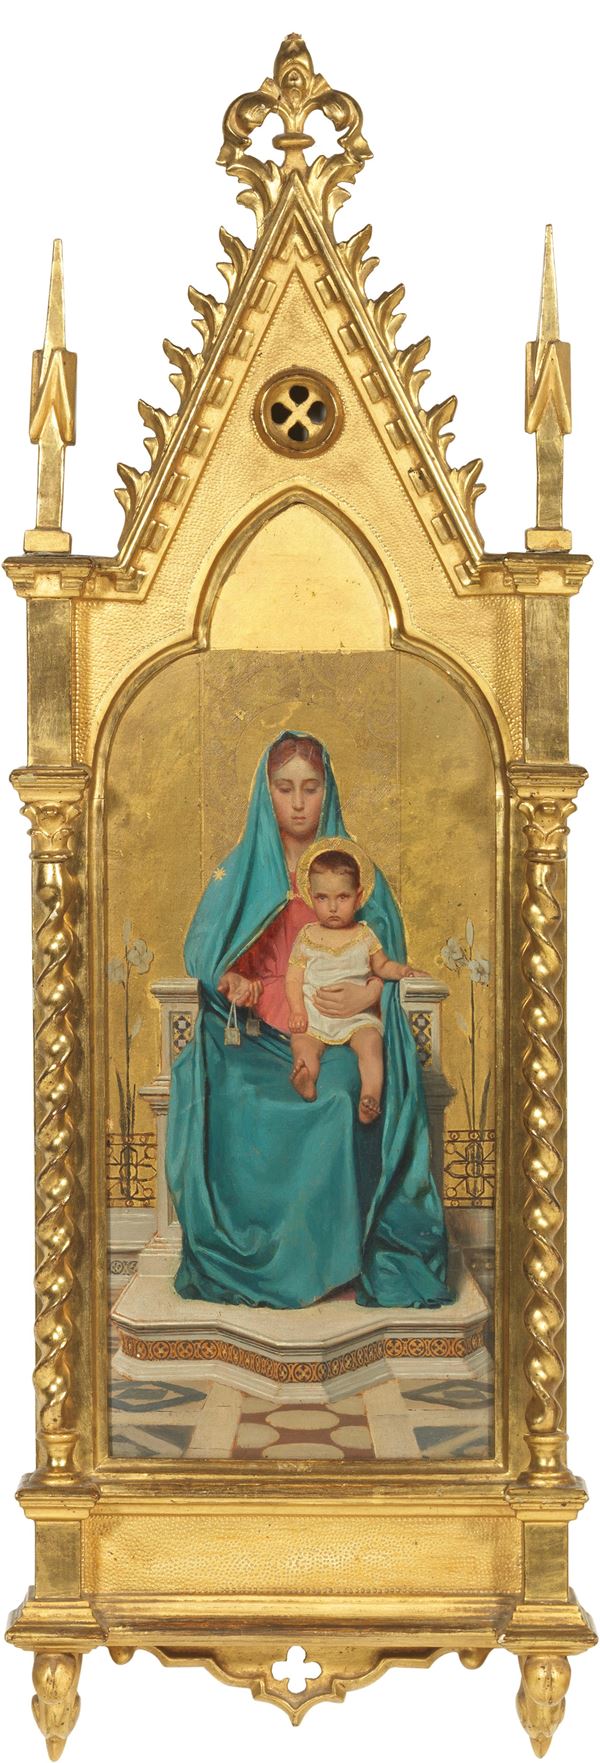 Ignoto del XIX secolo : Madonna con bambino  - Olio su tavola - Auction XIX and XX Century Paintings and Sculptures - Casa d'aste Farsettiarte